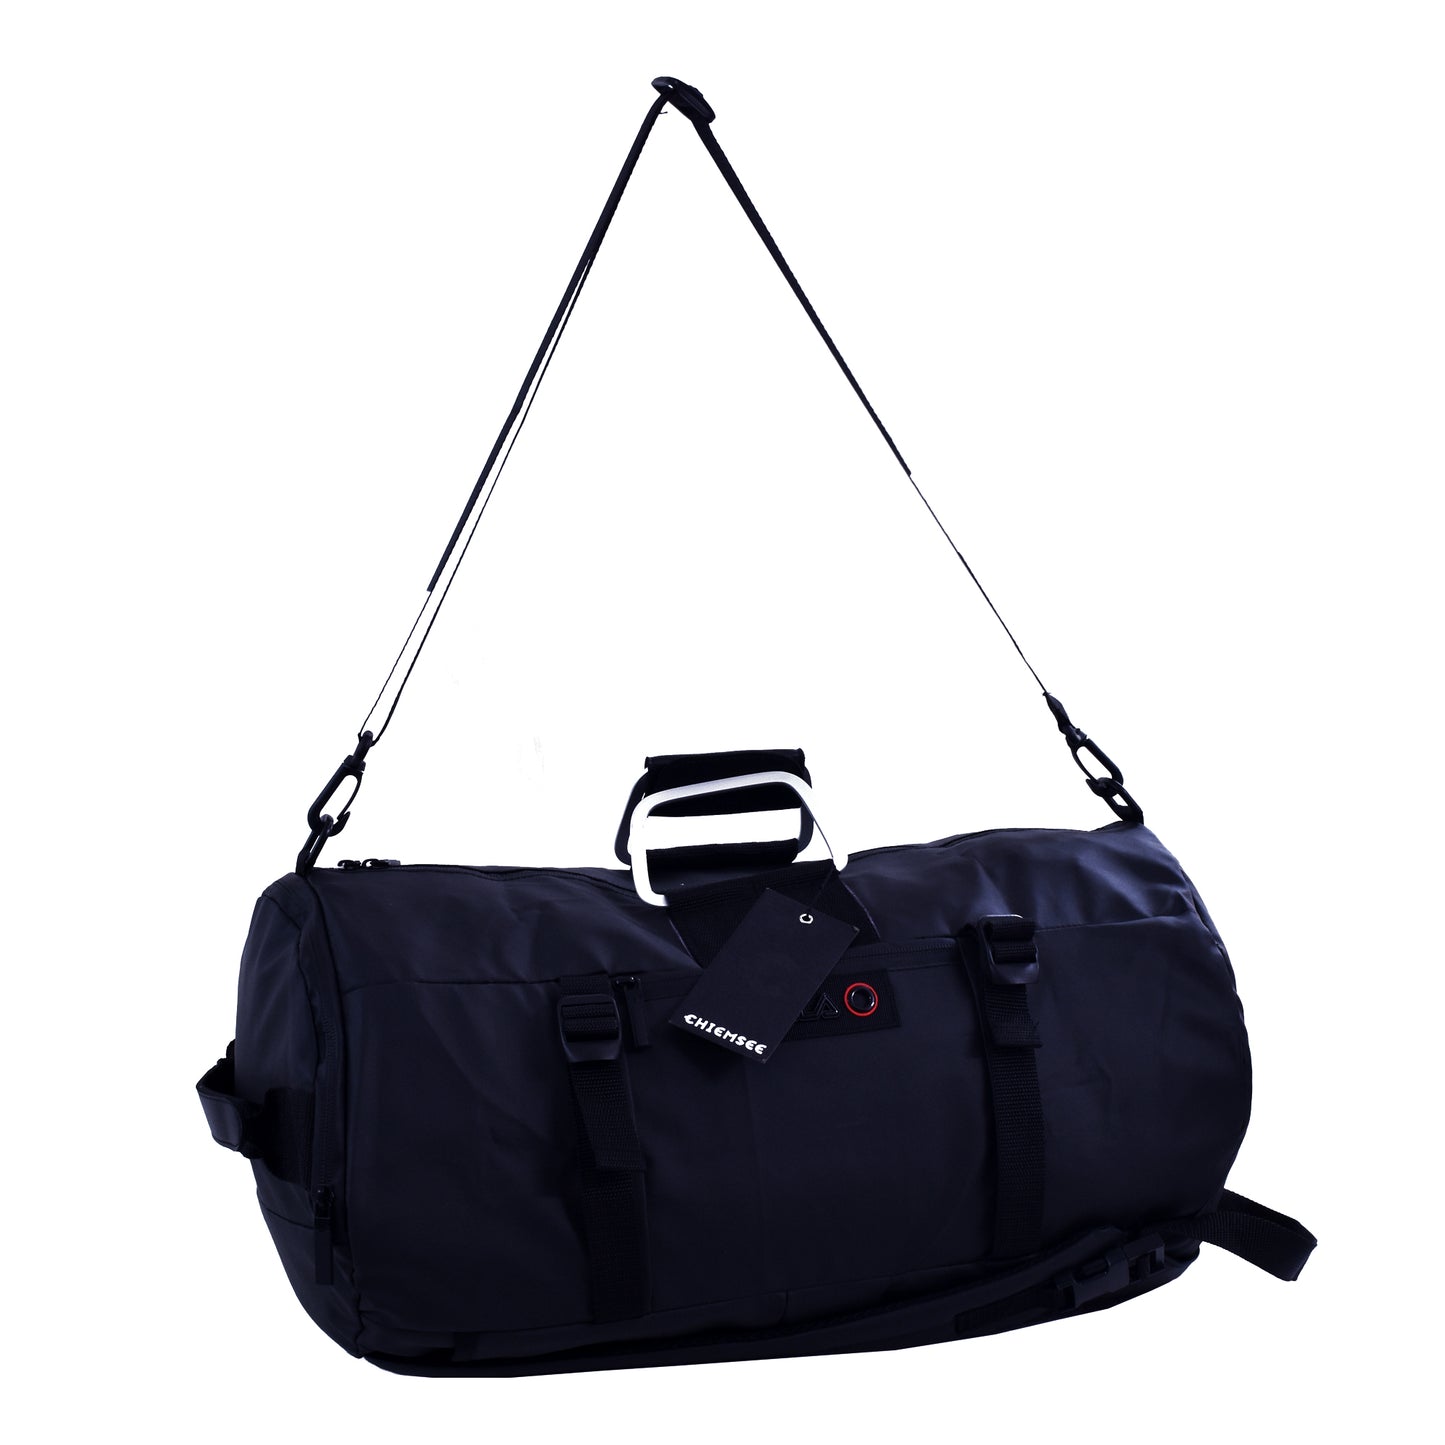 4in1 Bag Deep Navy Blue - Travel Bag / Gym Bag